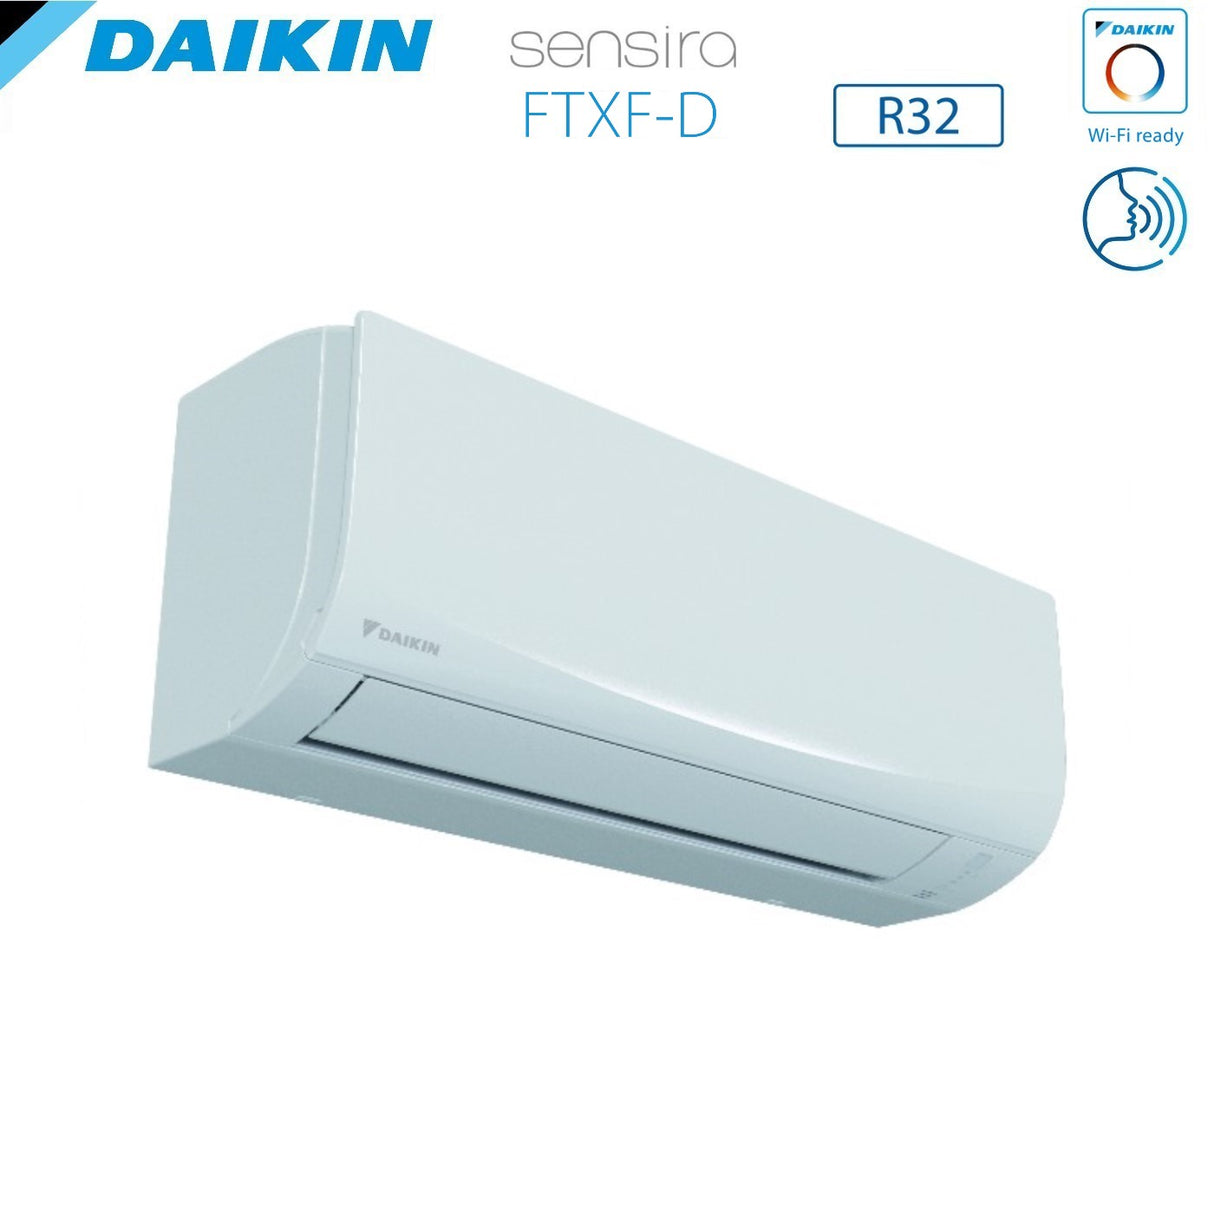 immagine-5-daikin-climatizzatore-condizionatore-daikin-inverter-serie-ecoplus-sensira-7000-btu-ftxf20d-r-32-wi-fi-optional-classe-a-ean-8059657000774